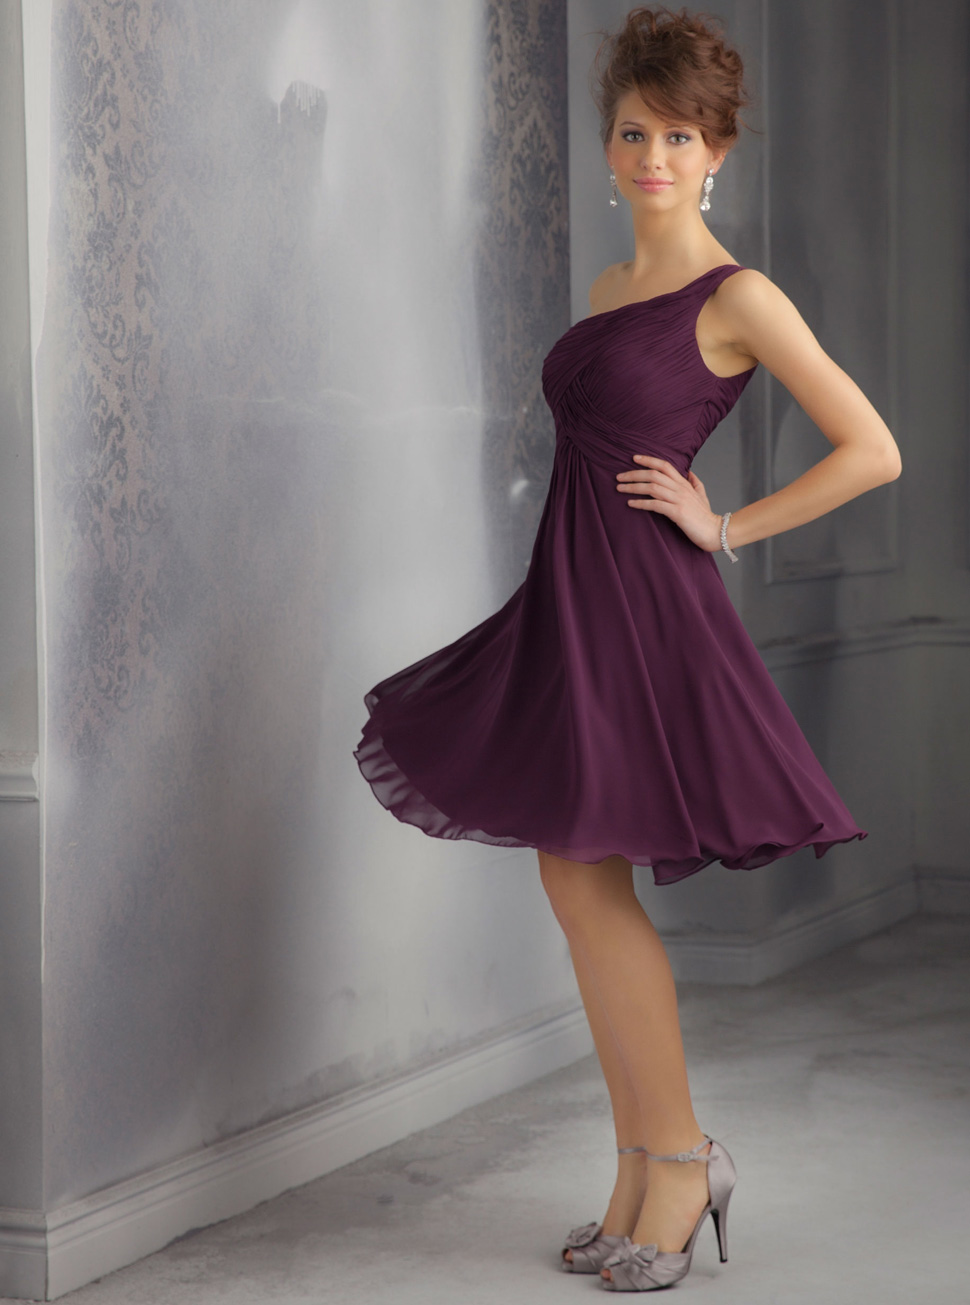 新款斜肩小礼服批发定制欧式紫色雪纺纱高腰礼服裙LIFU2048